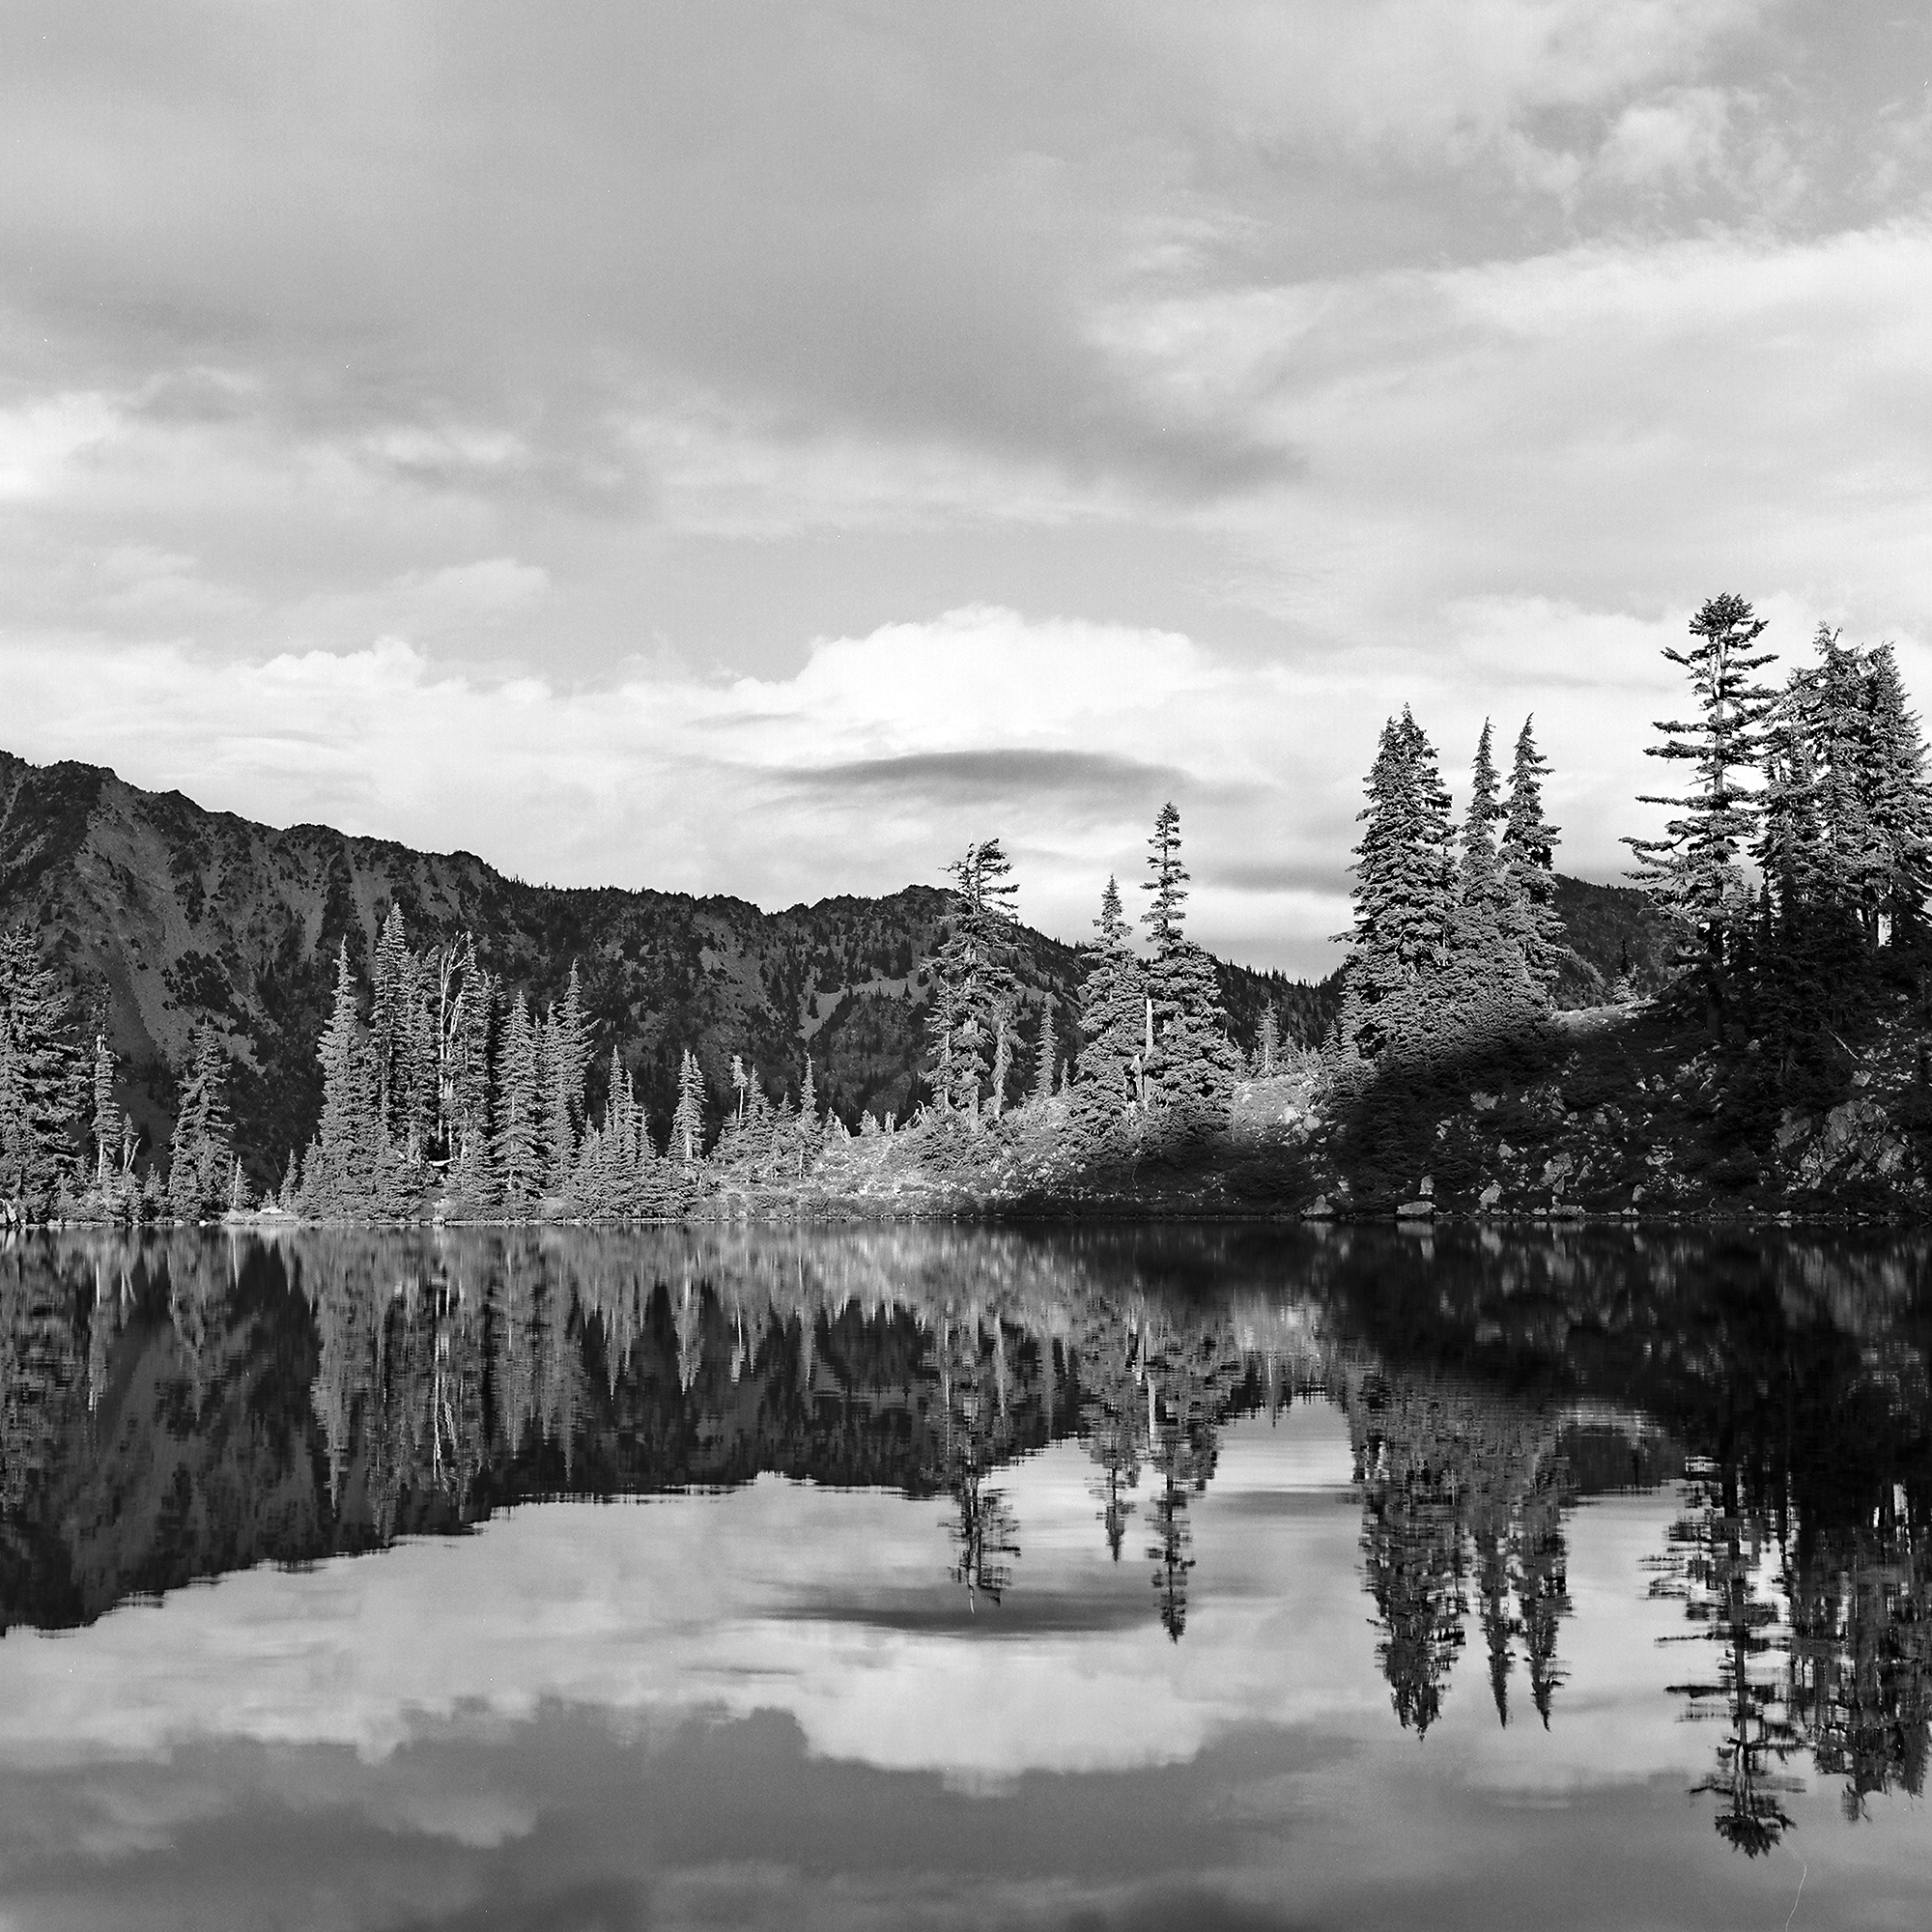  Sprite Lake, Alpine Lakes Wilderness, Washington © 2013.  Image: Rolleiflex 2.8 F + Zeiss Planar 1:2.8/80mm. 